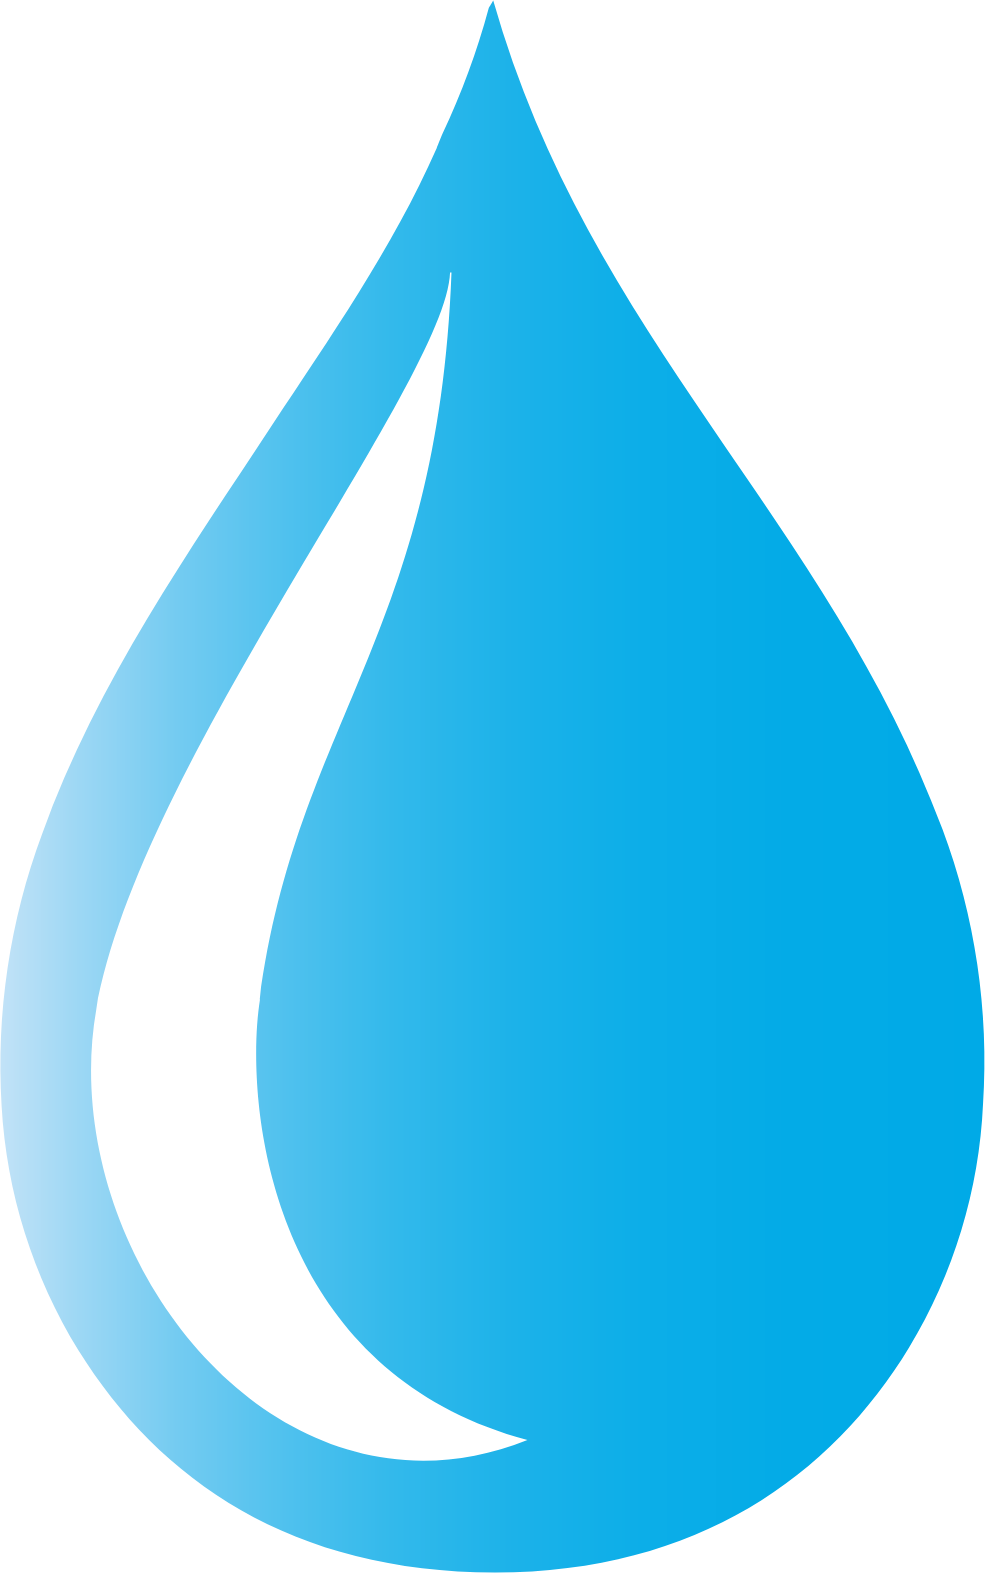 ProPhase Labs logo (PNG transparent)